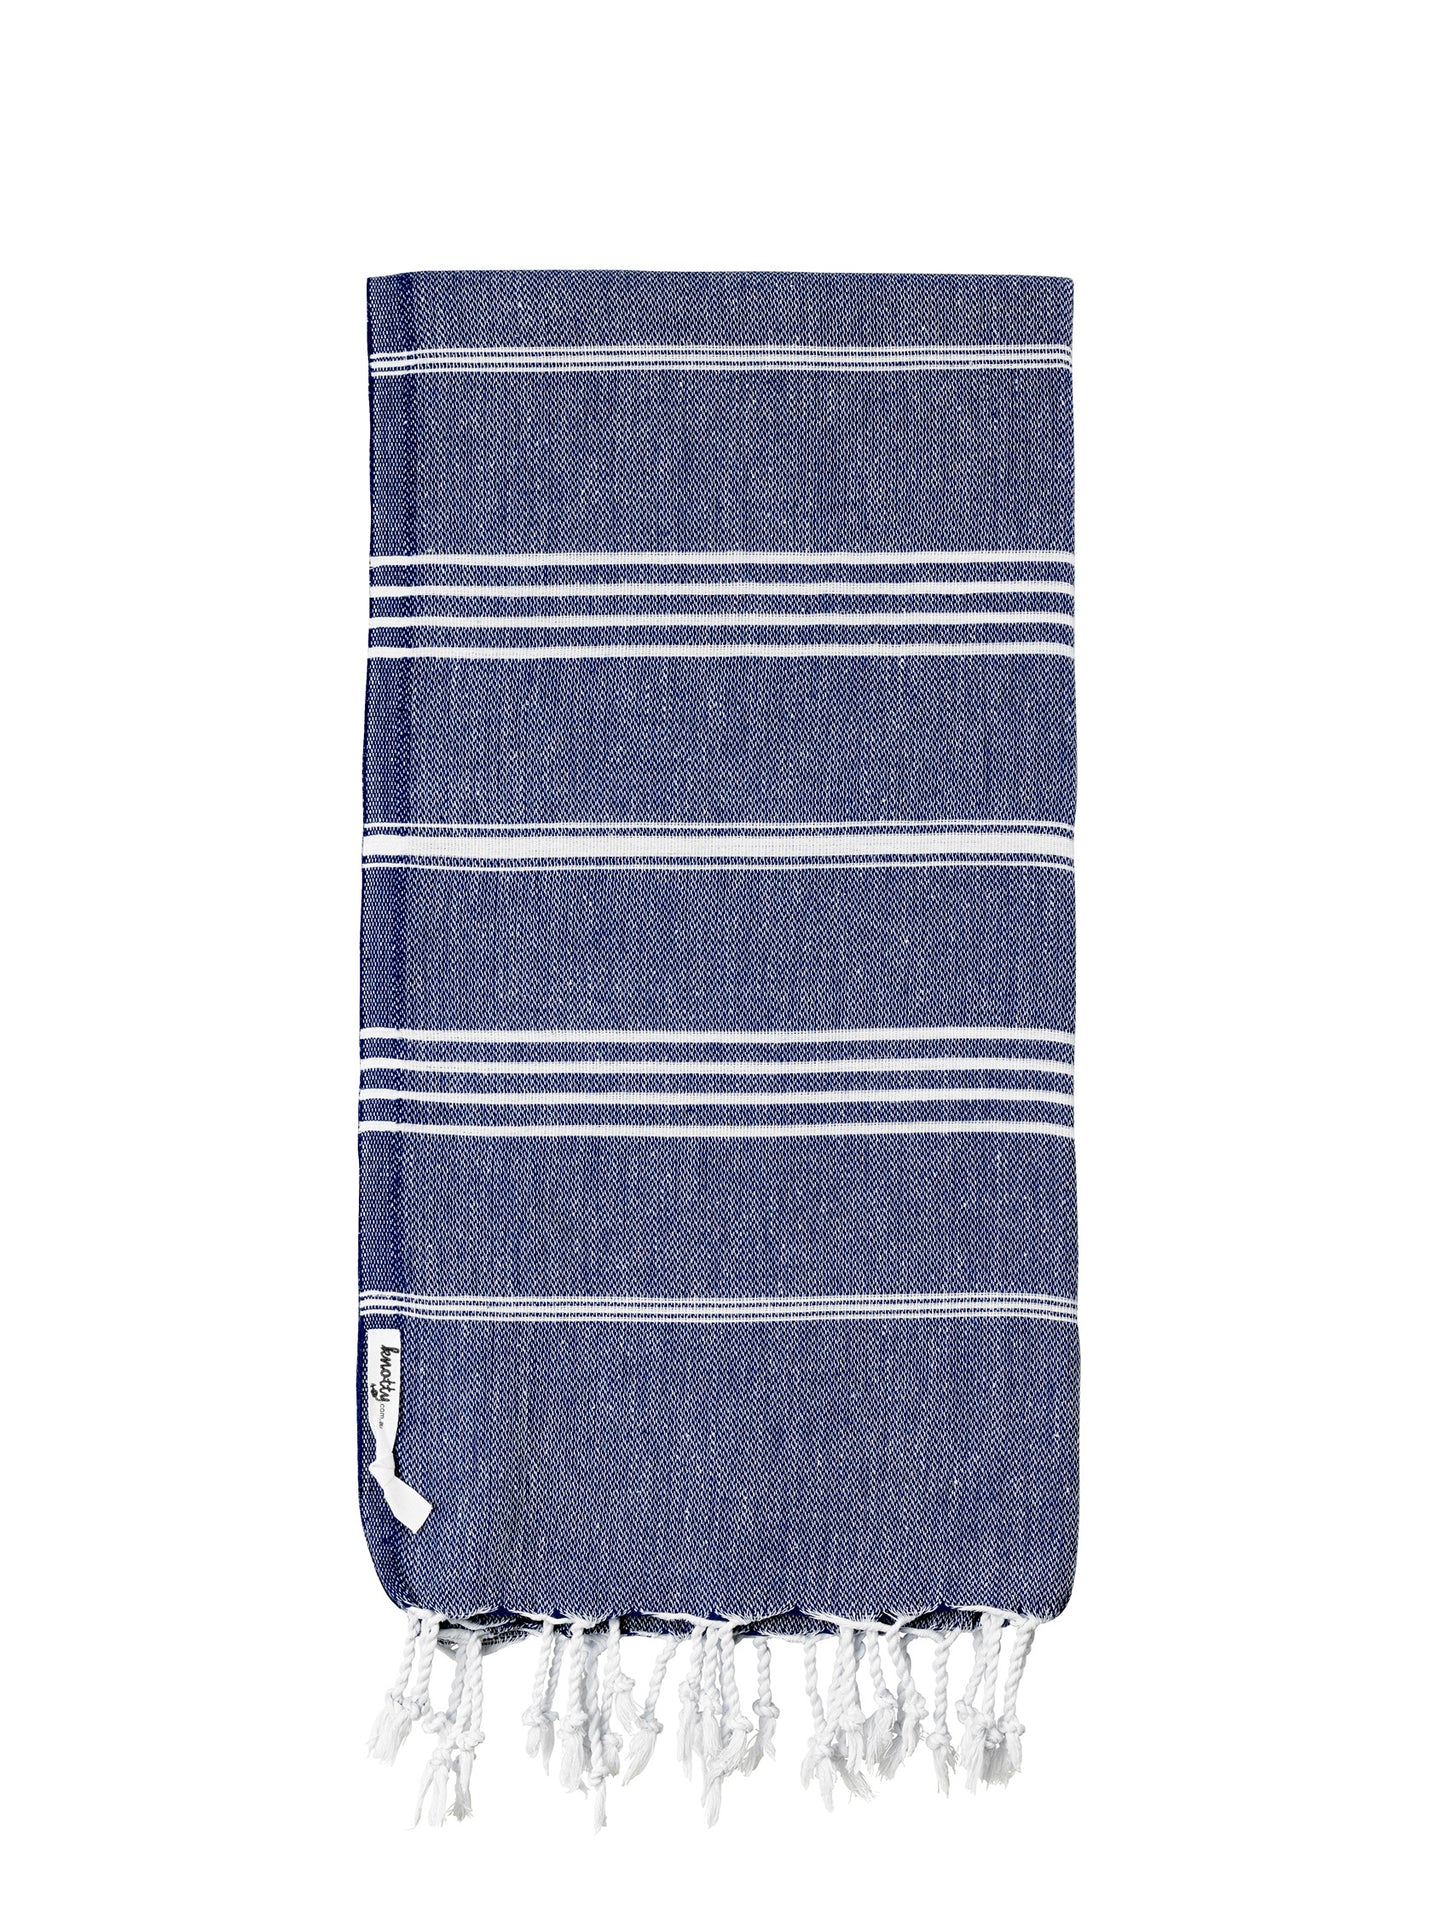 Knotty Original Turkish Towel | Navy